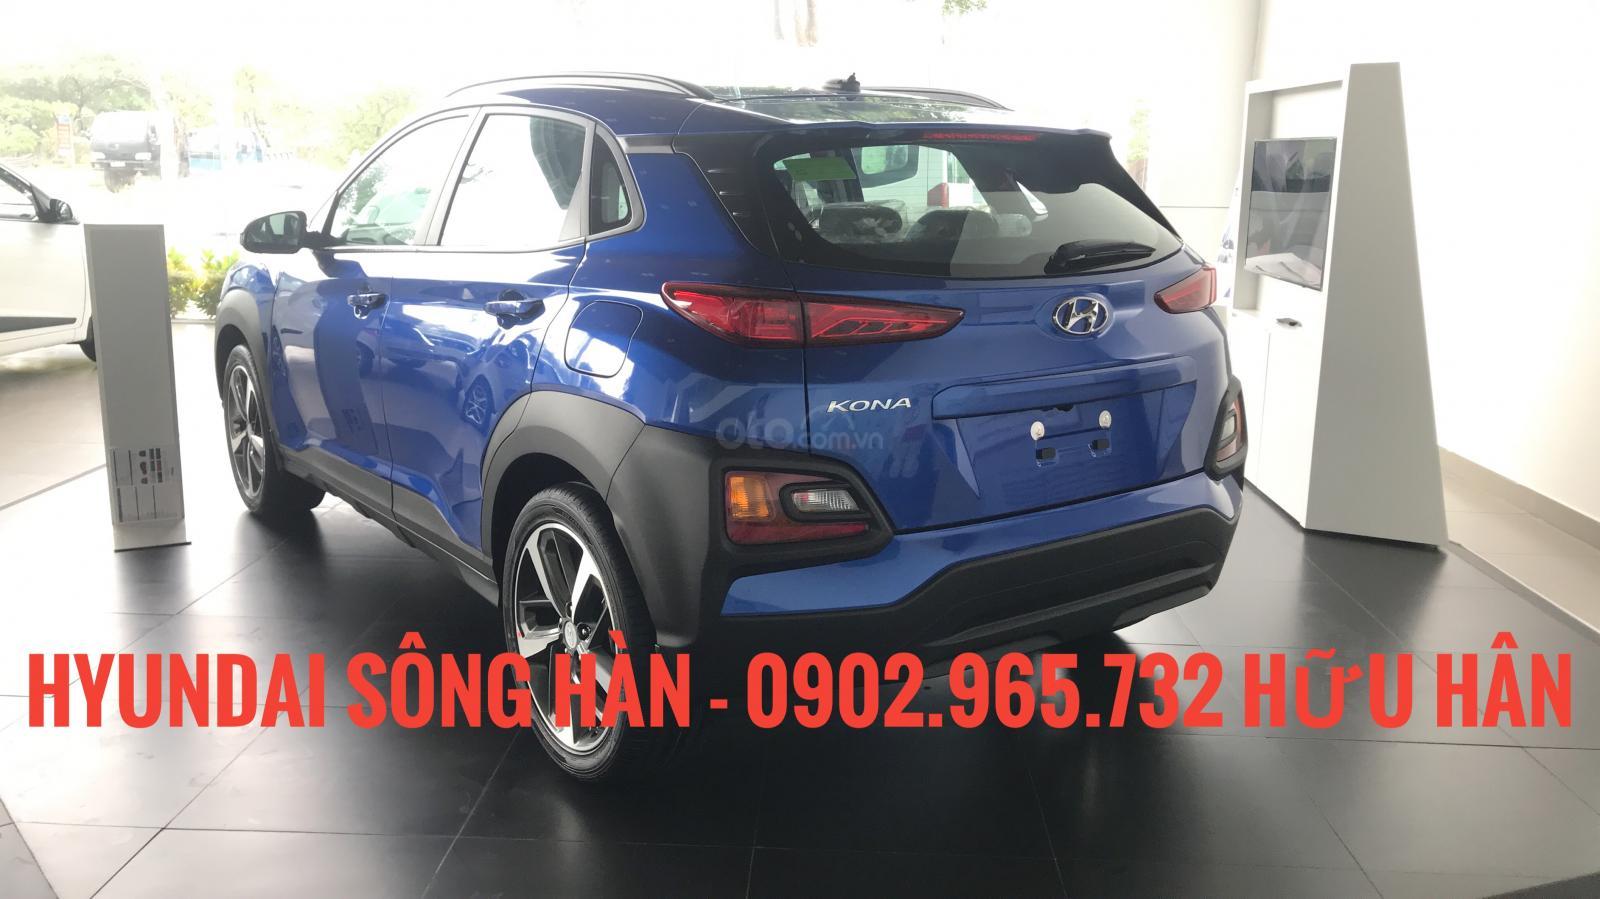 Hyundai Hyundai khác 2019 - Bán Hyundai Kona nhập khẩu tại Đà Nẵng, LH: Hữu Hân 0902 965 732